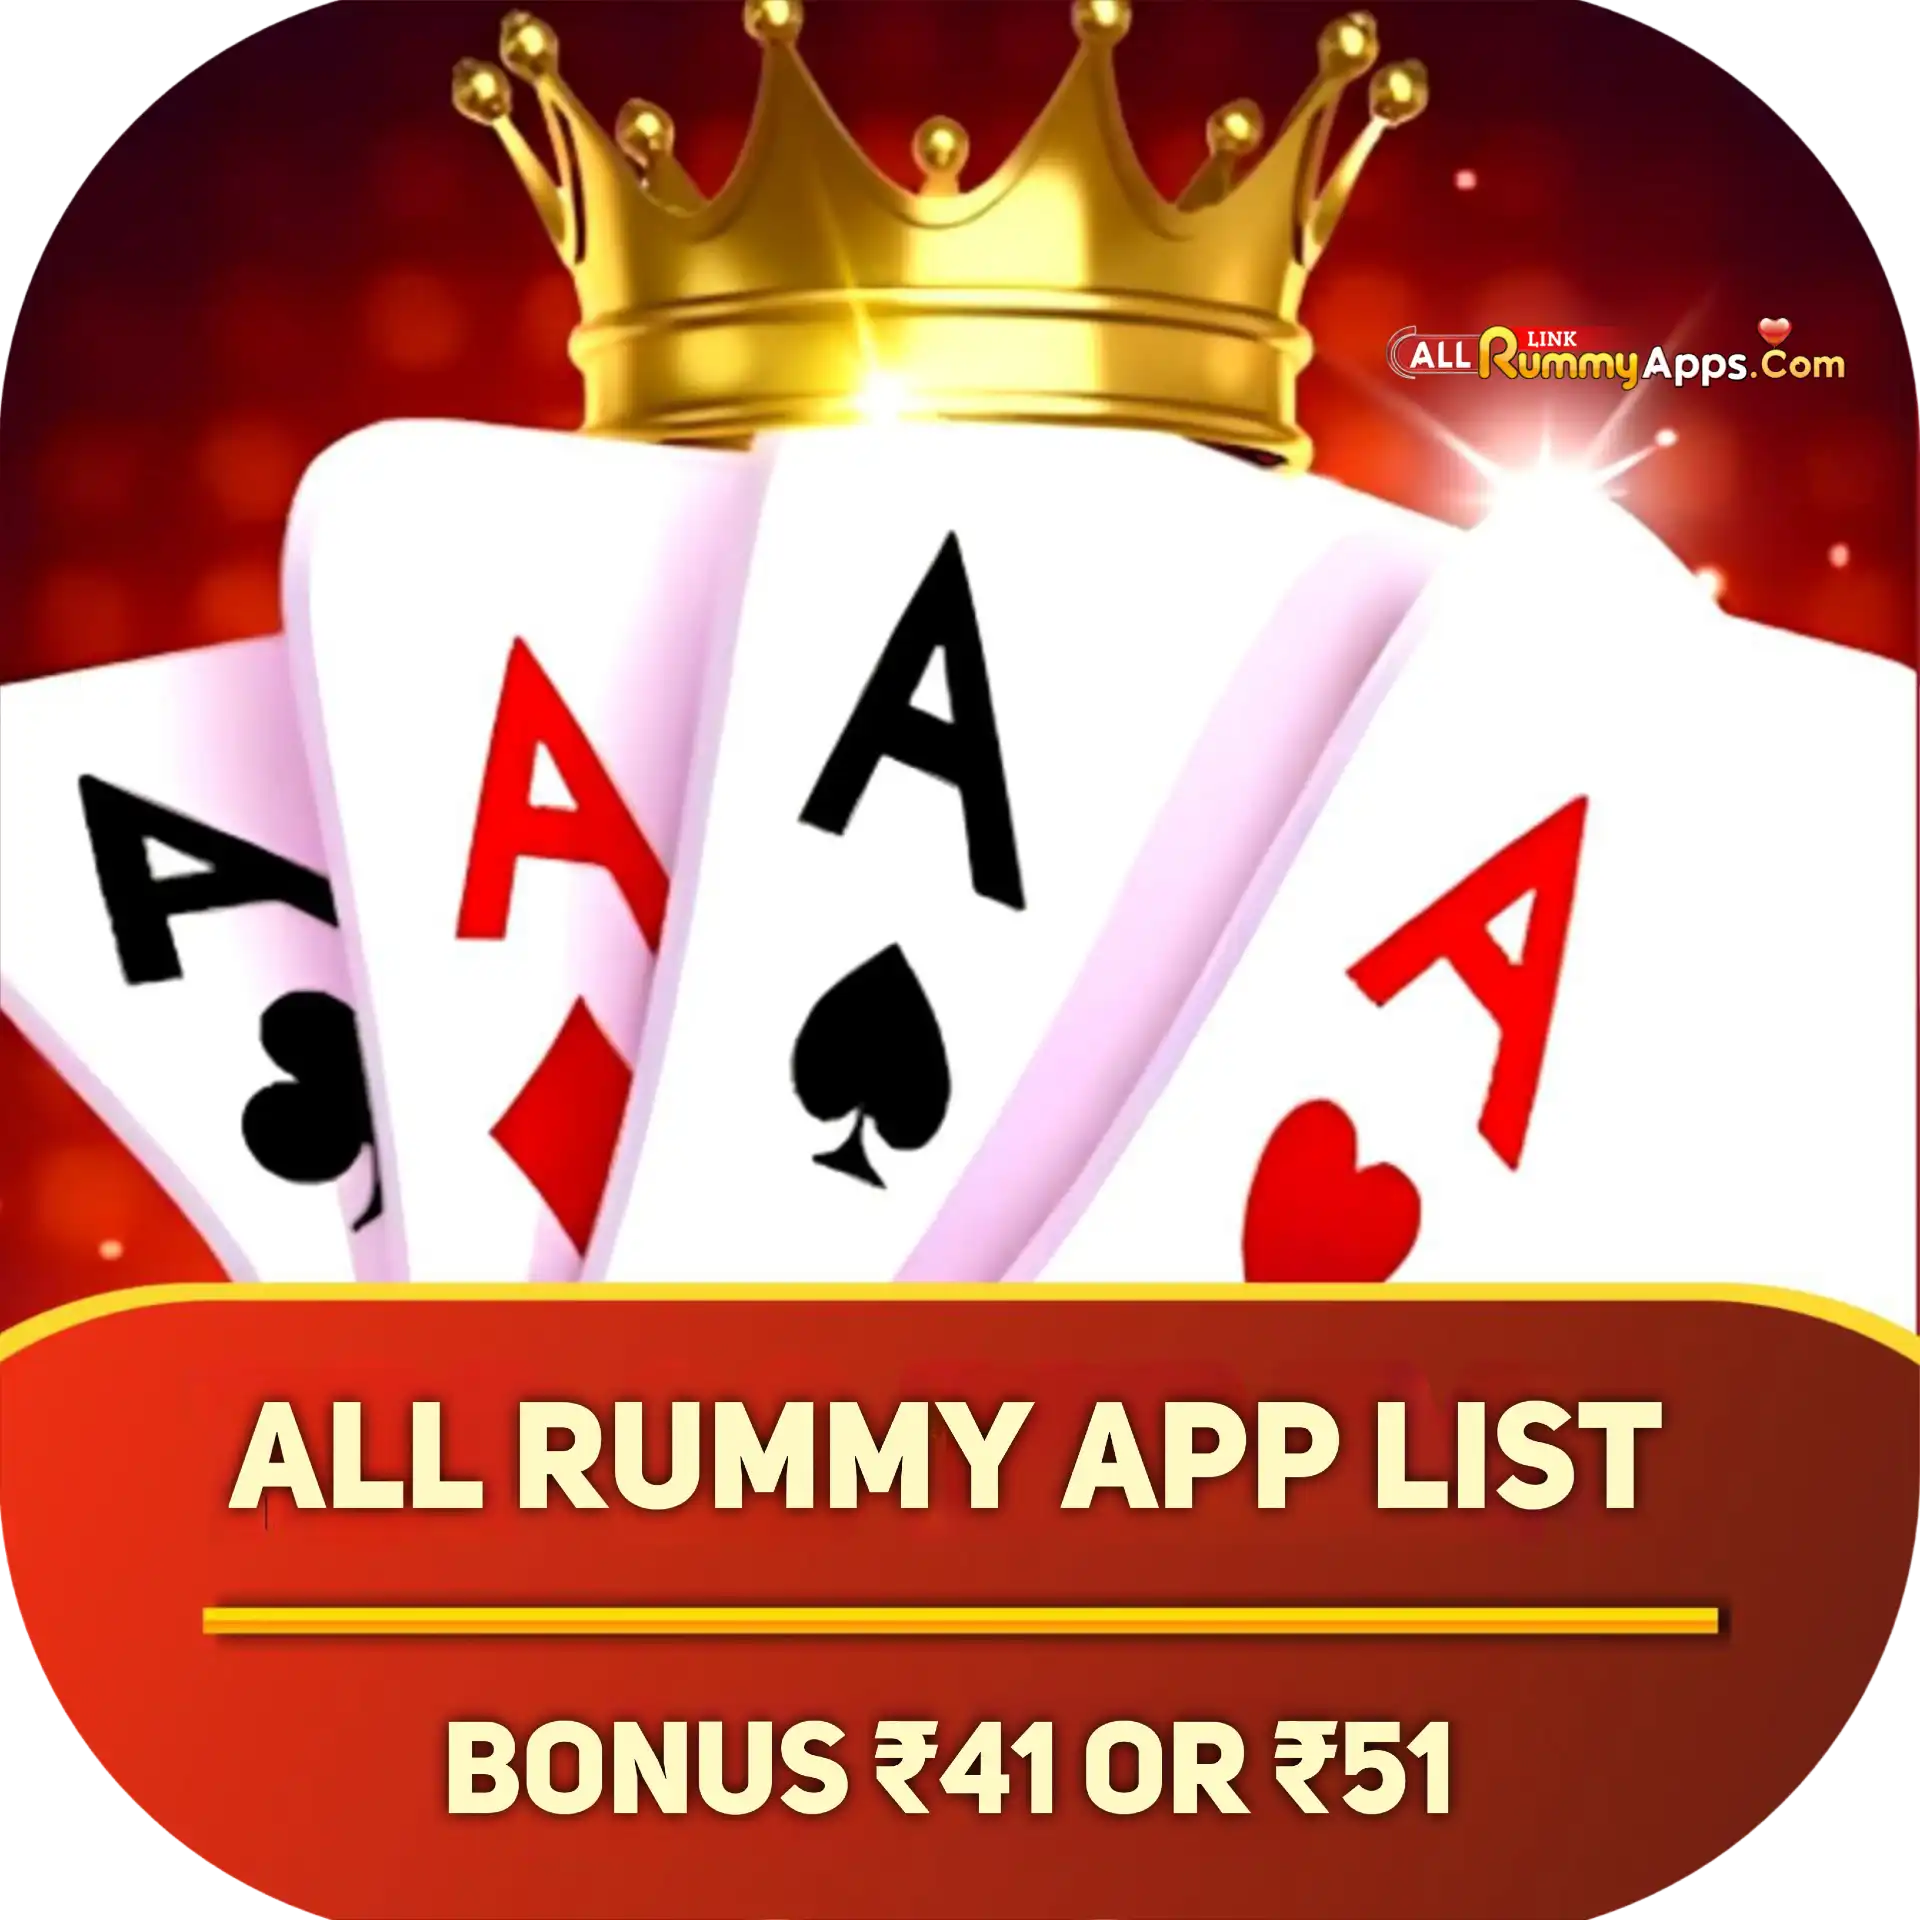 All Rummy Apps List - All Rummy App - All Rummy Apps - RummyBonusApp